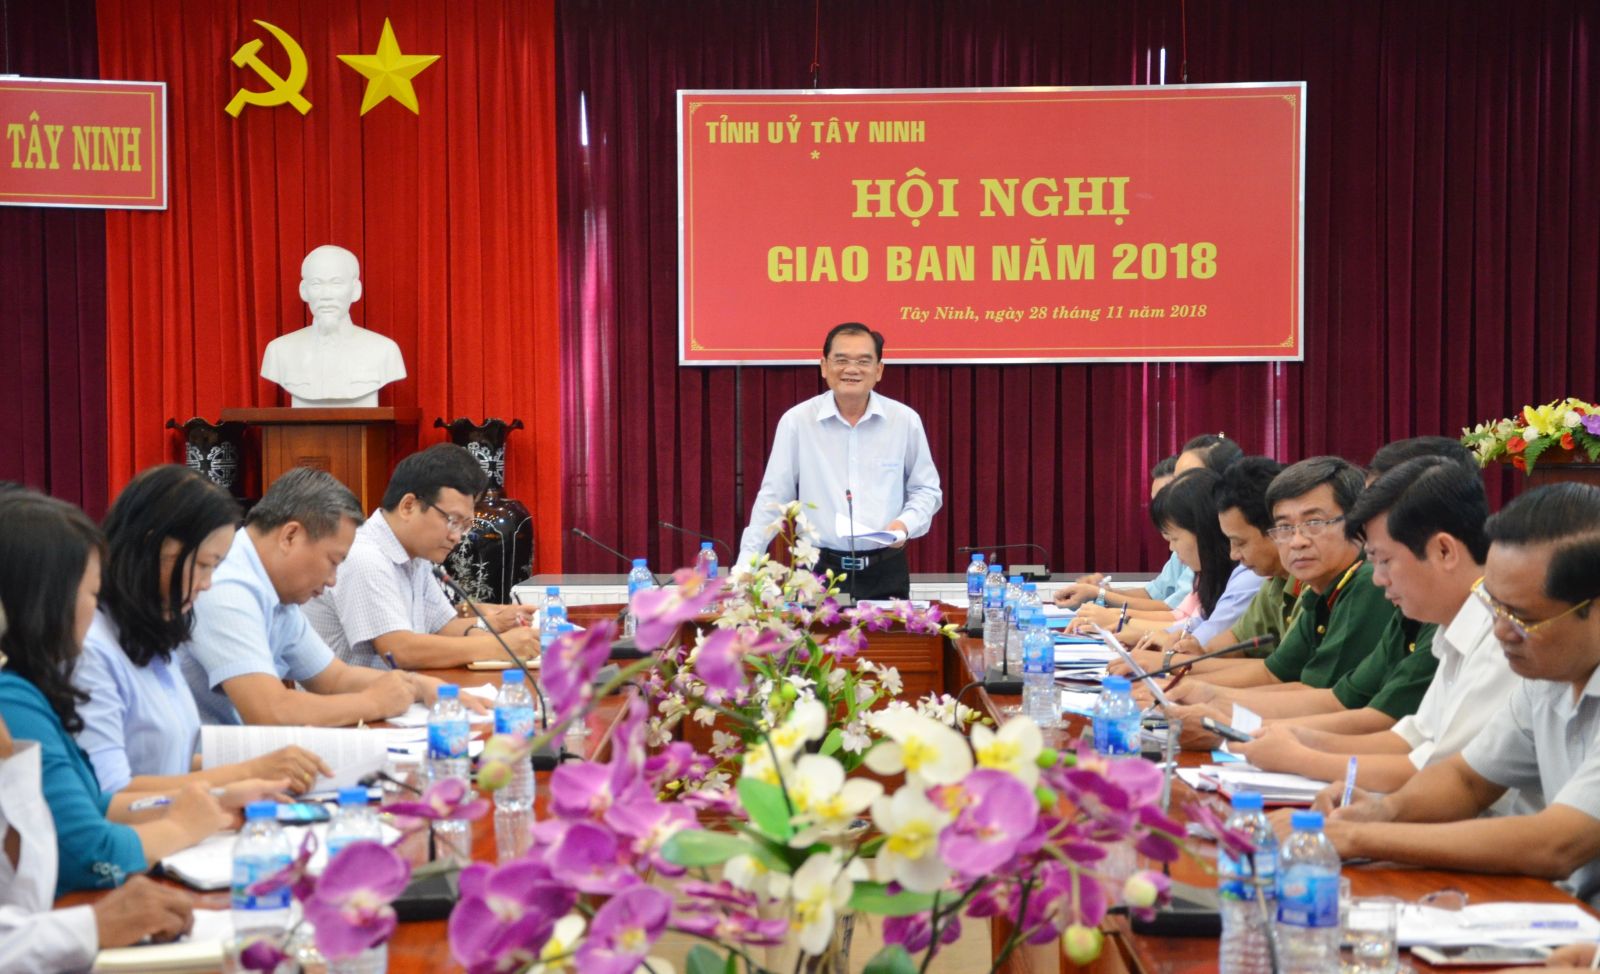 Điểm báo in Tây Ninh ngày 30.11.2018